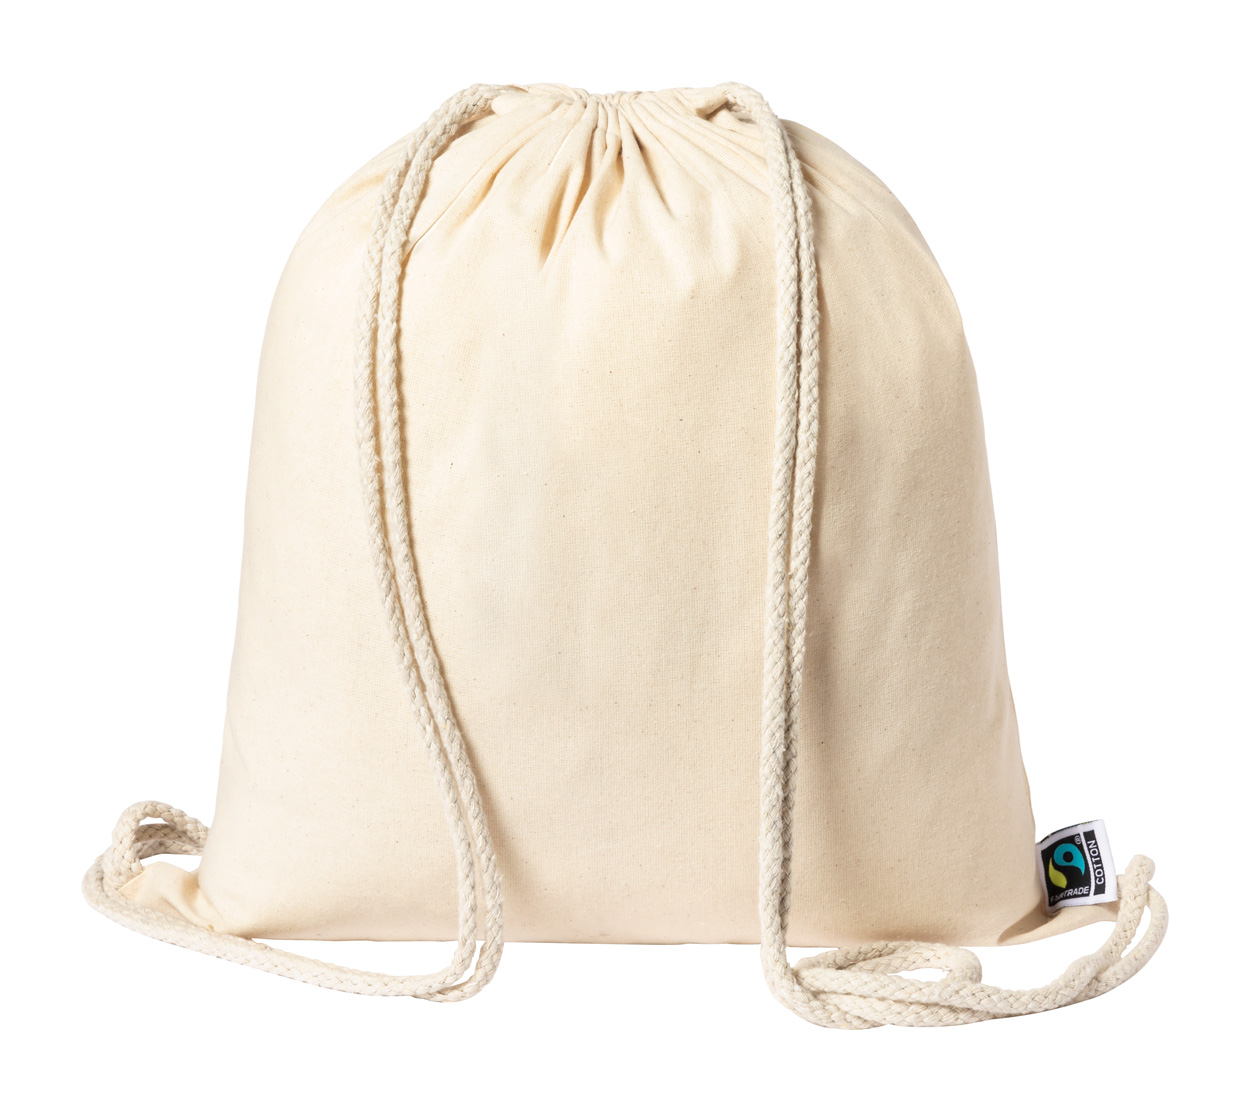 Sanfer fairtrade bag for download - beige